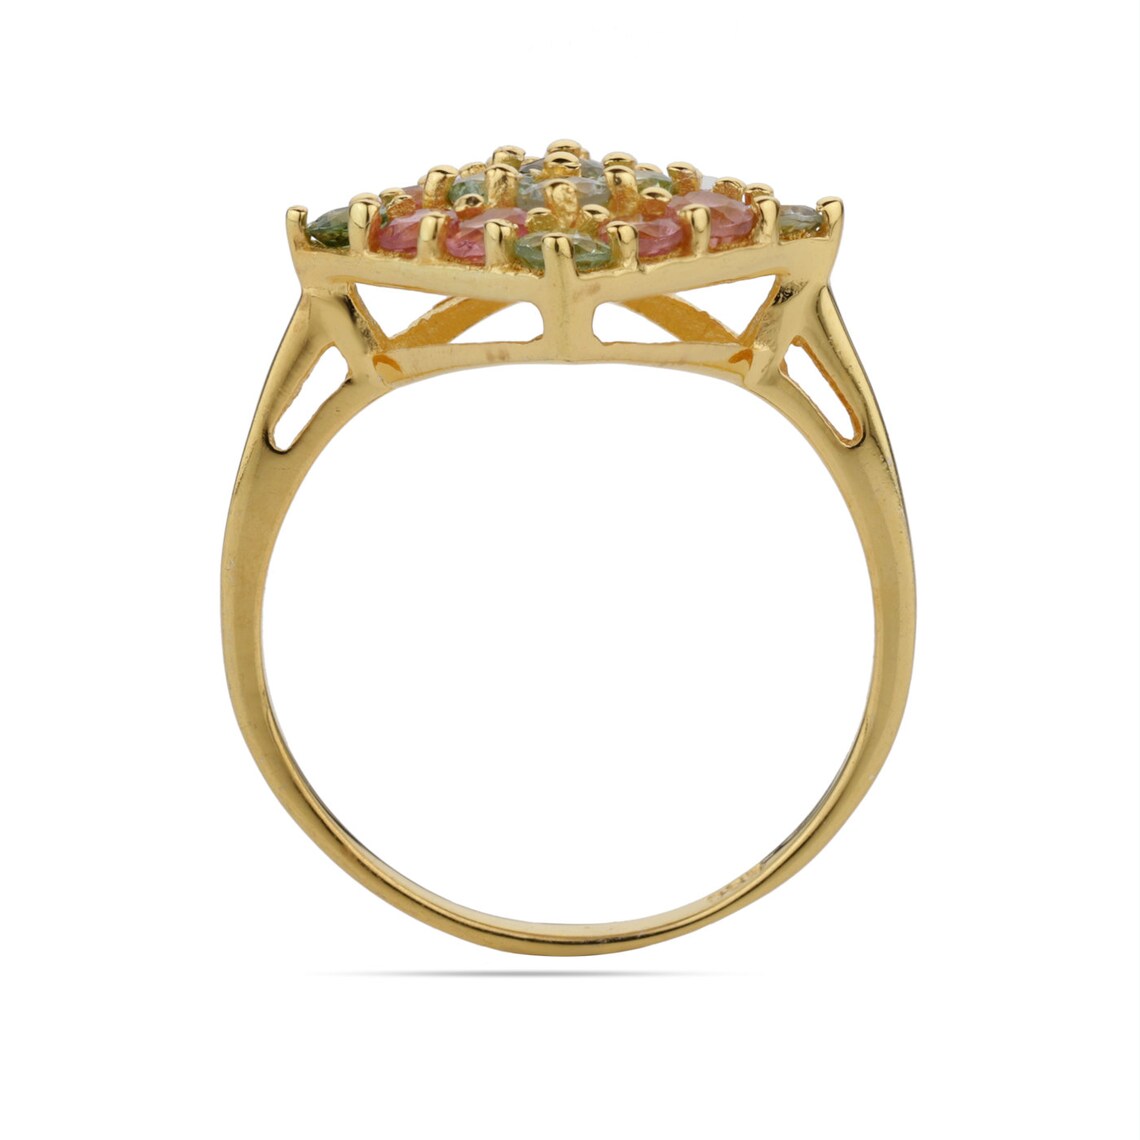 Multi Tourmaline Gold Ring, Tourmaline Gemstone Ring, Anniversary Gift Ring, Women’s Ring, 925 Silver Ring